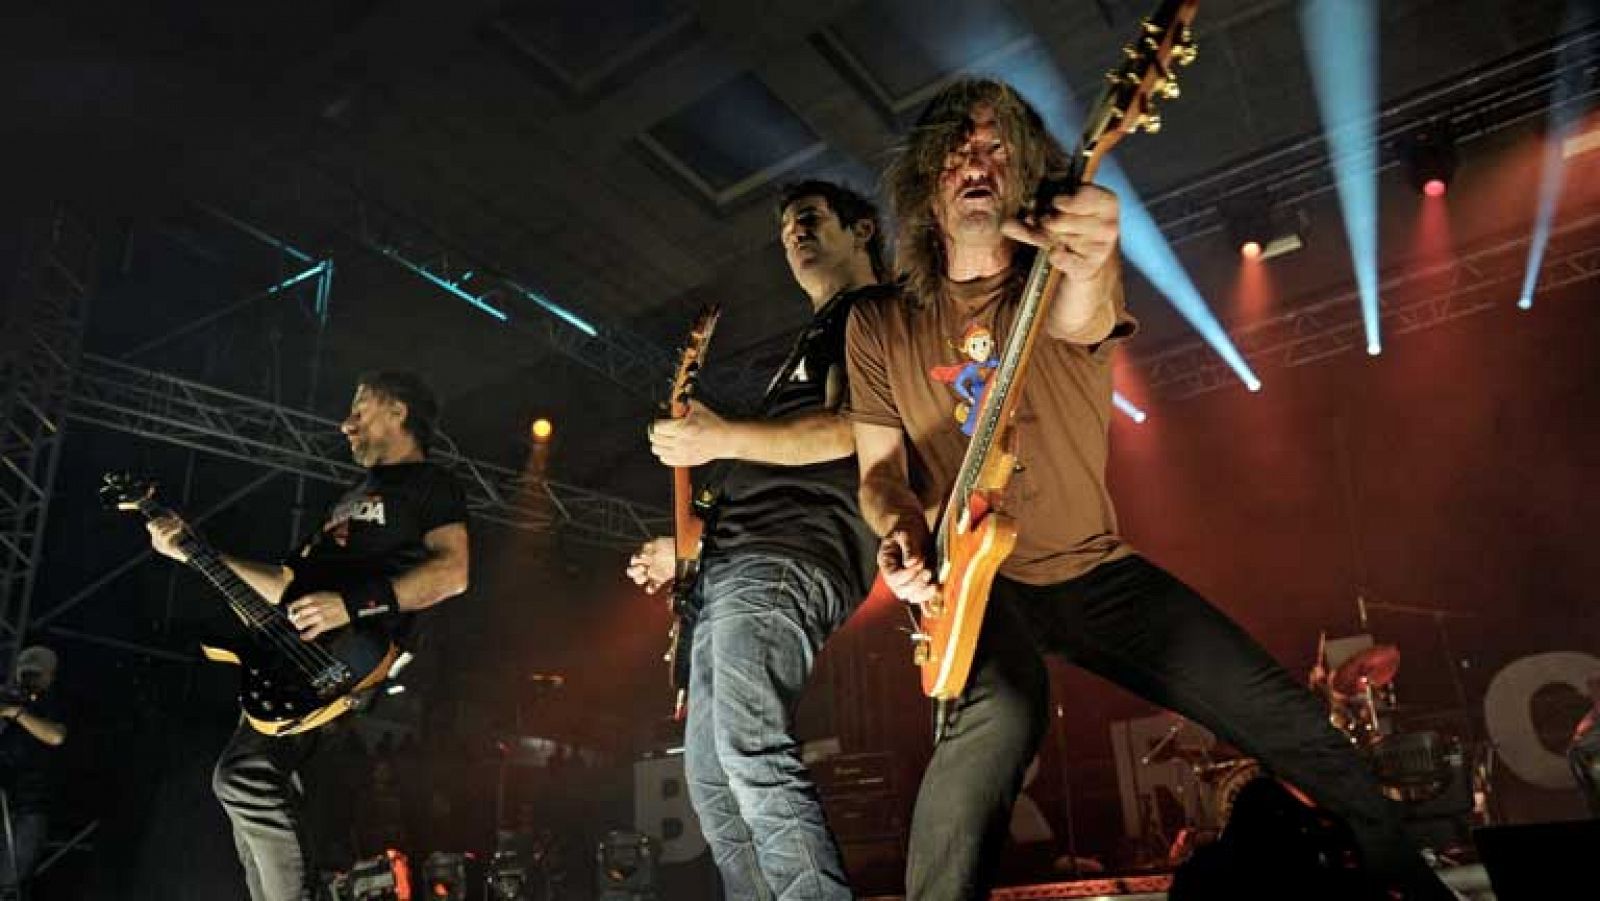 El grupo de rock navarro Barricada compartió su última noche con sus incondicionales